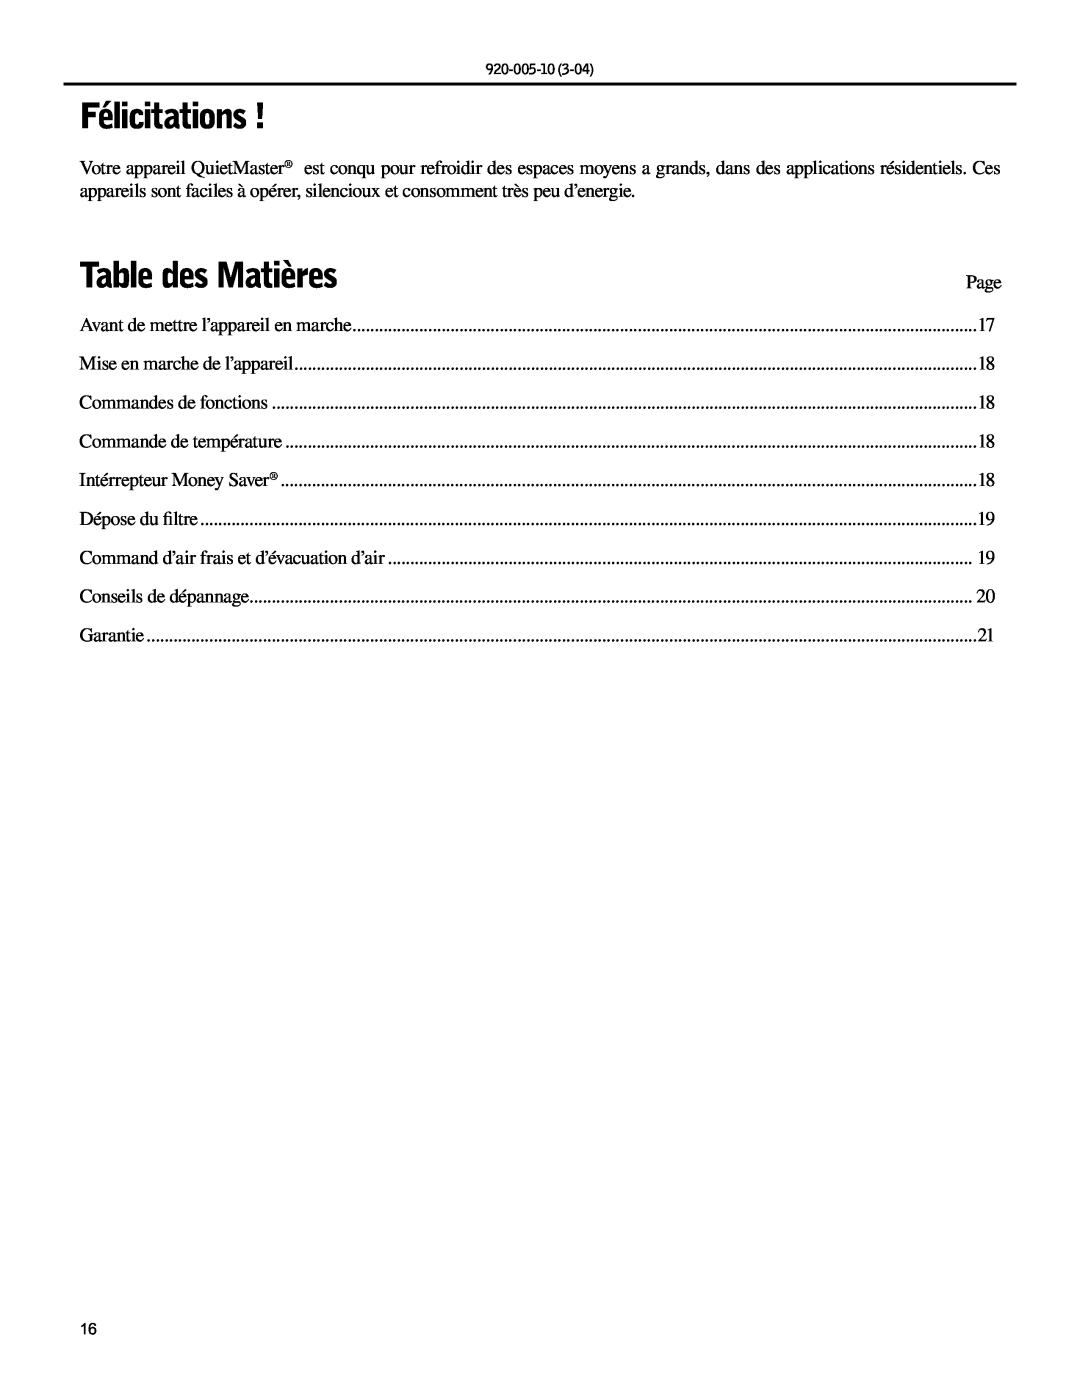 Friedrich KS10, KM20 manual Félicitations, Table des Matières 